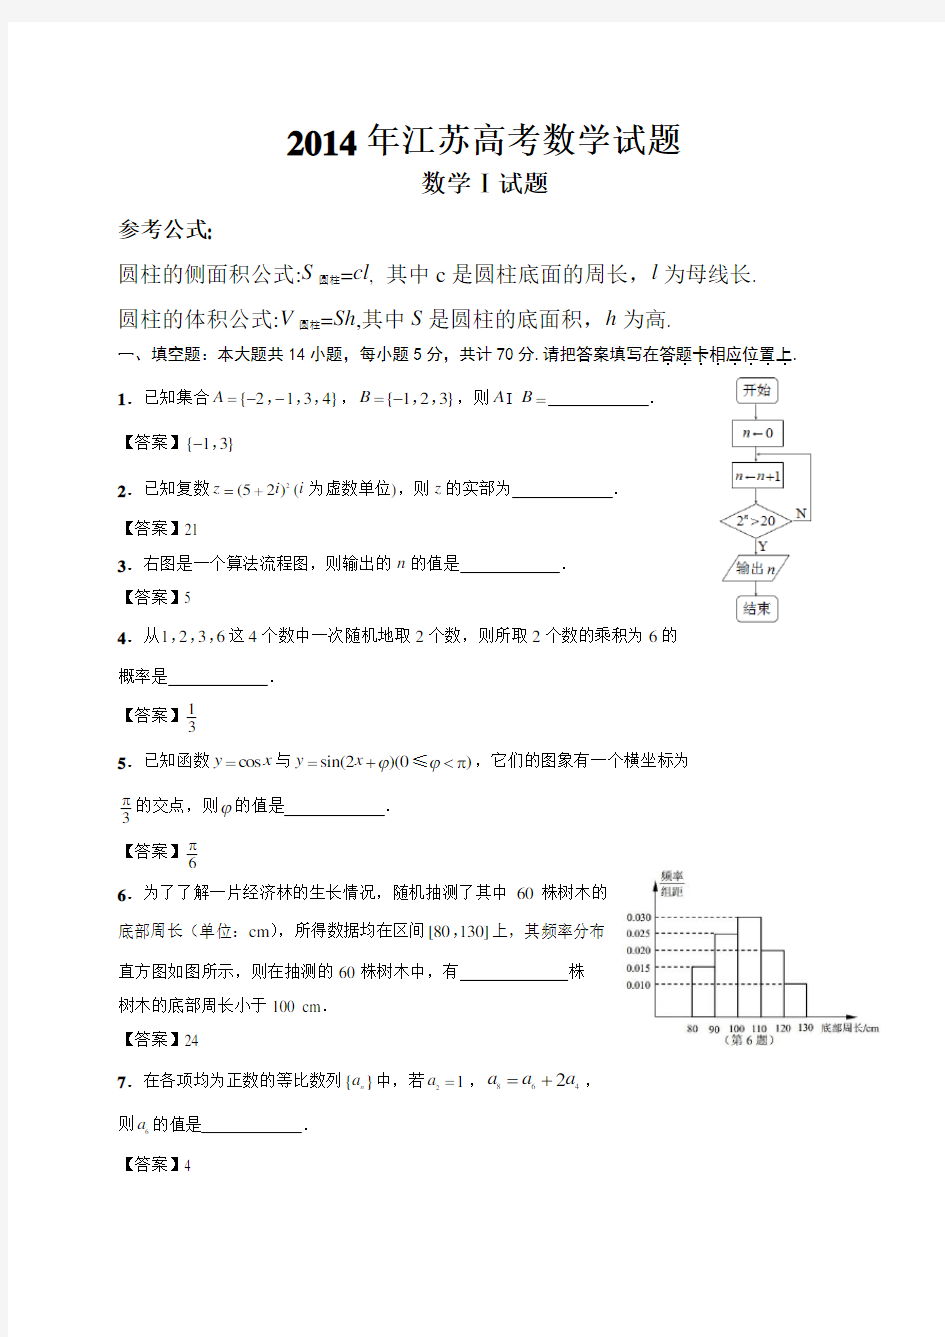 江苏高考数学试题及详细答案含附加题